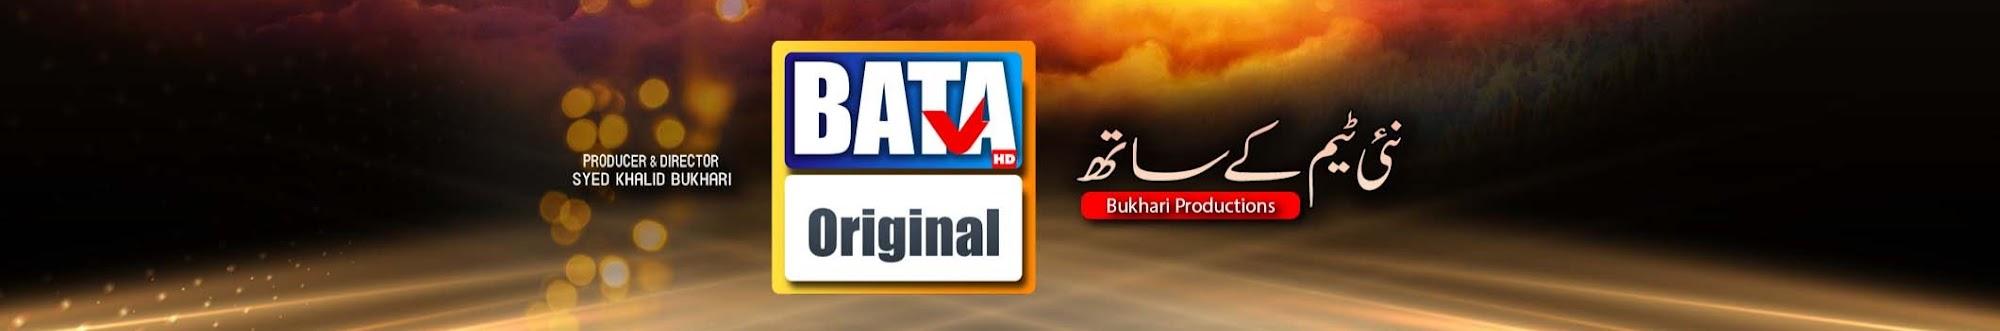 BATA TV